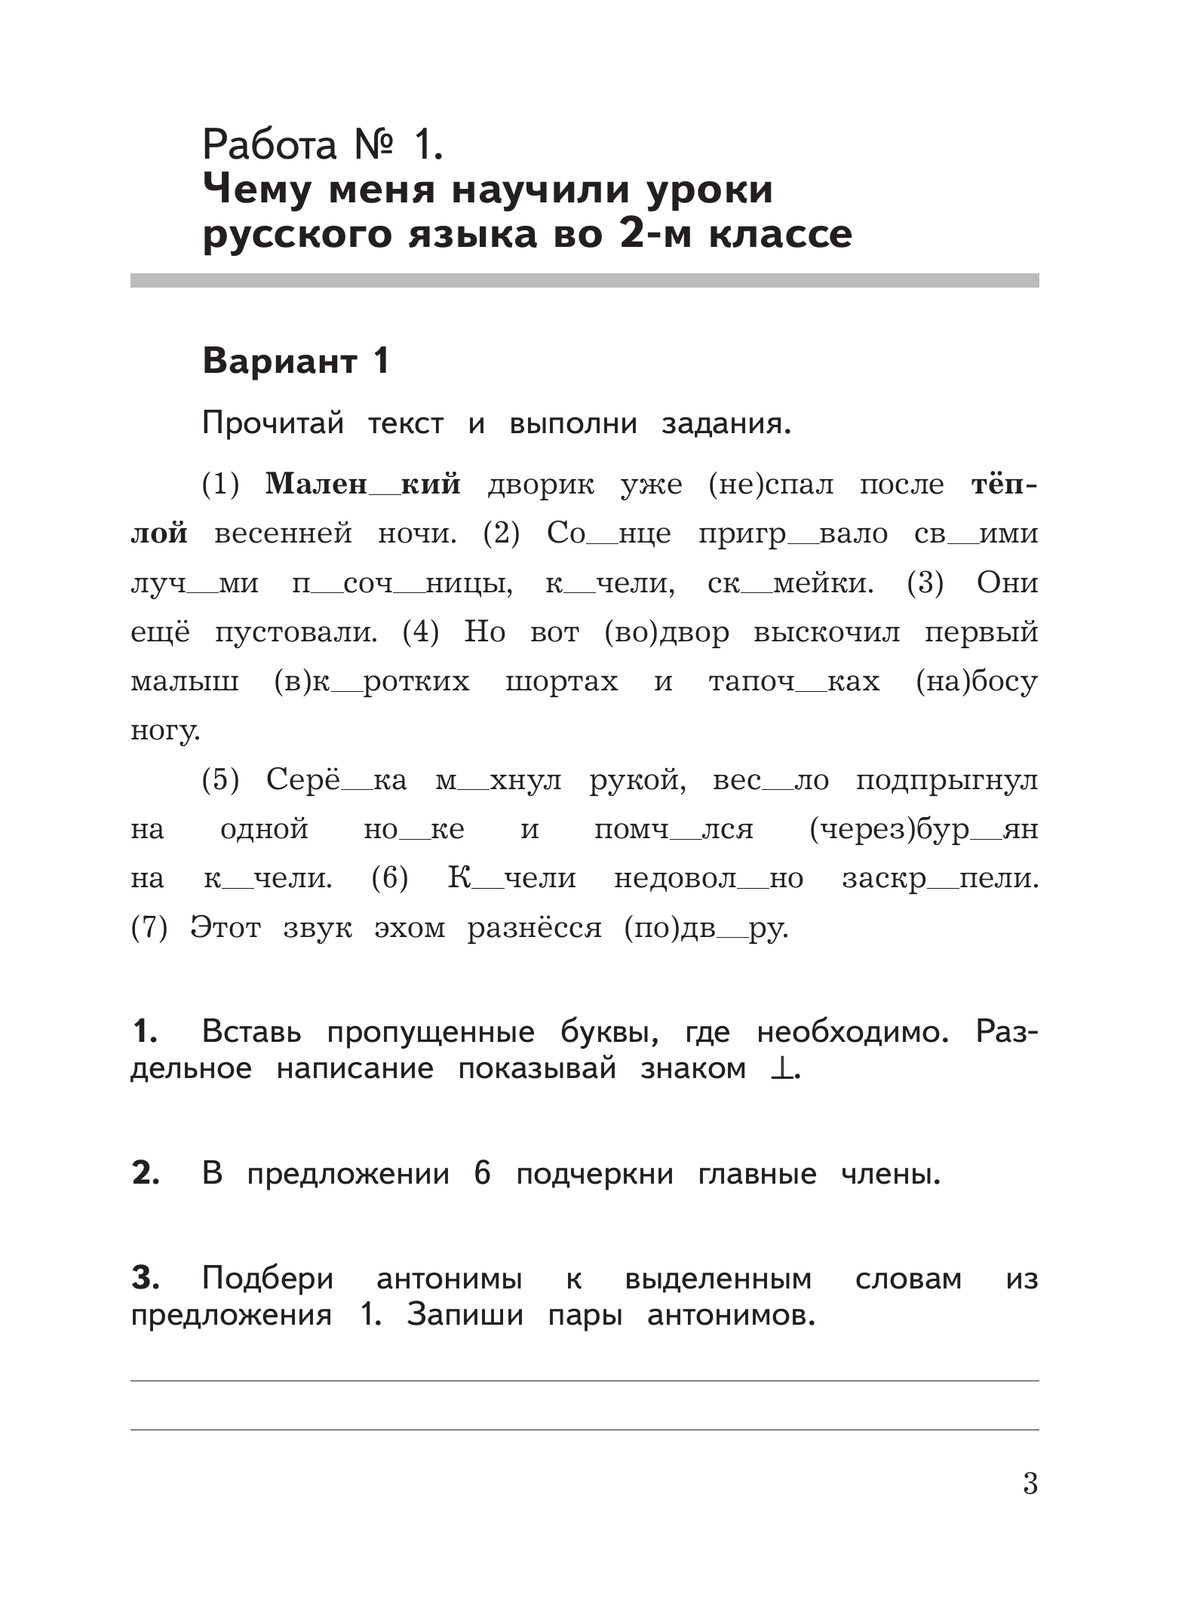 Русский язык.Предварительный контроль, текущий контроль, итоговый контроль. 3 класс 4